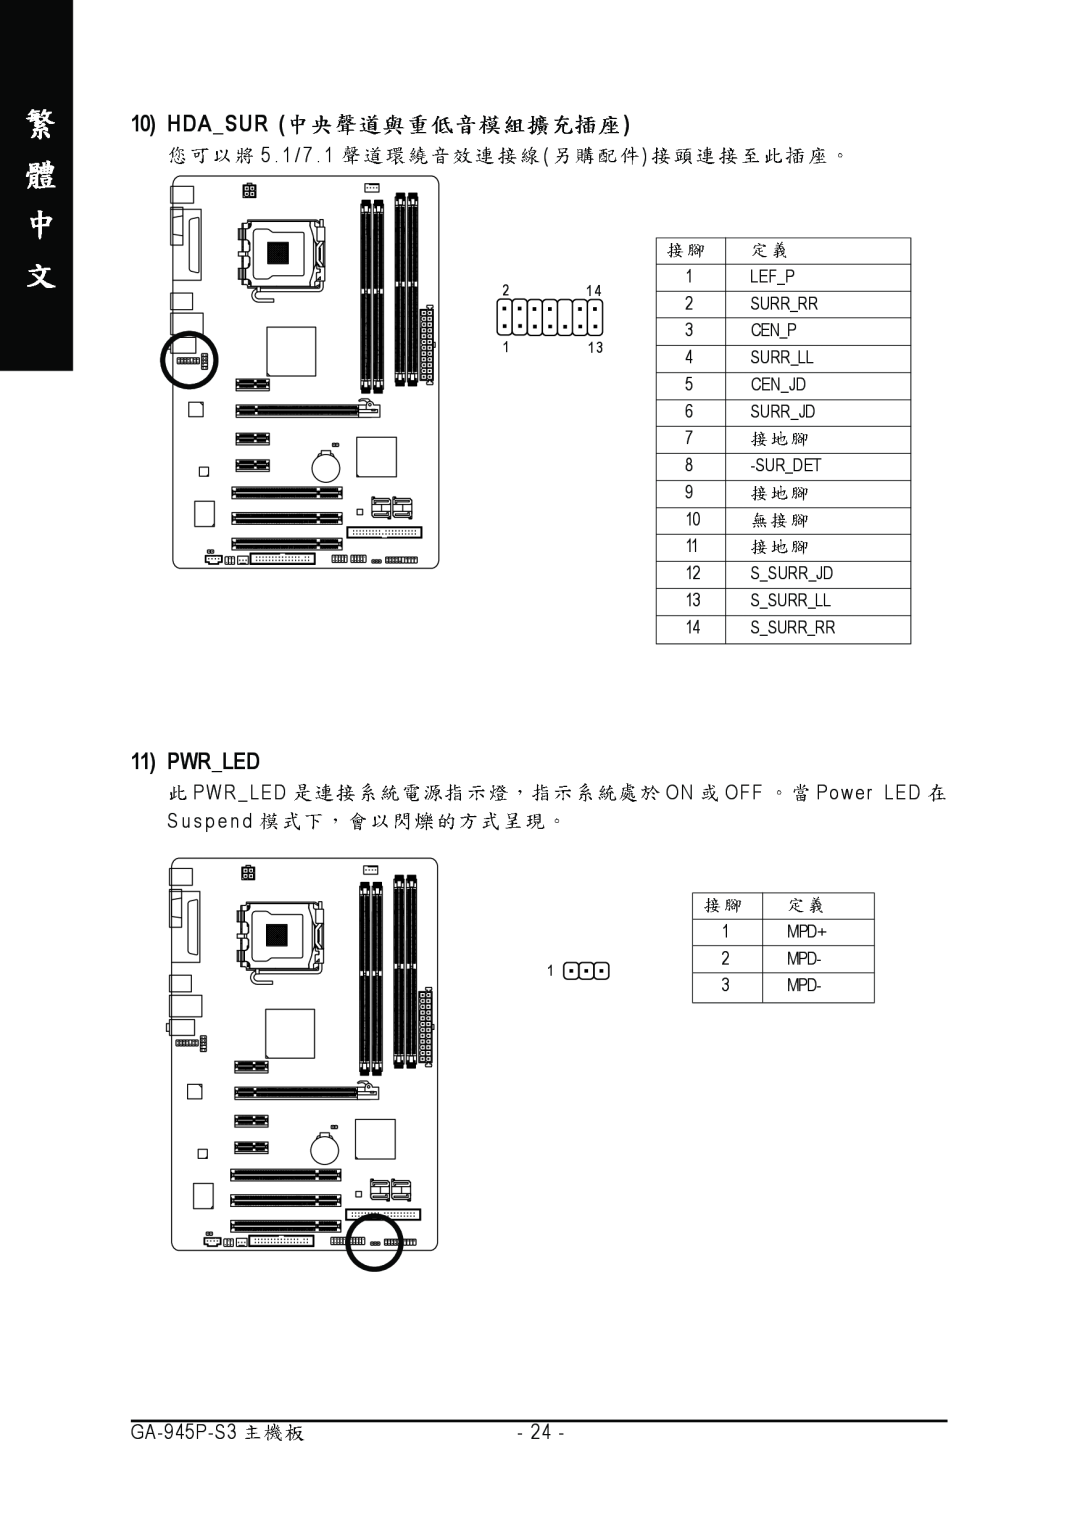 Intel GA-945P-S3 manual Hdasur, Pwrled 